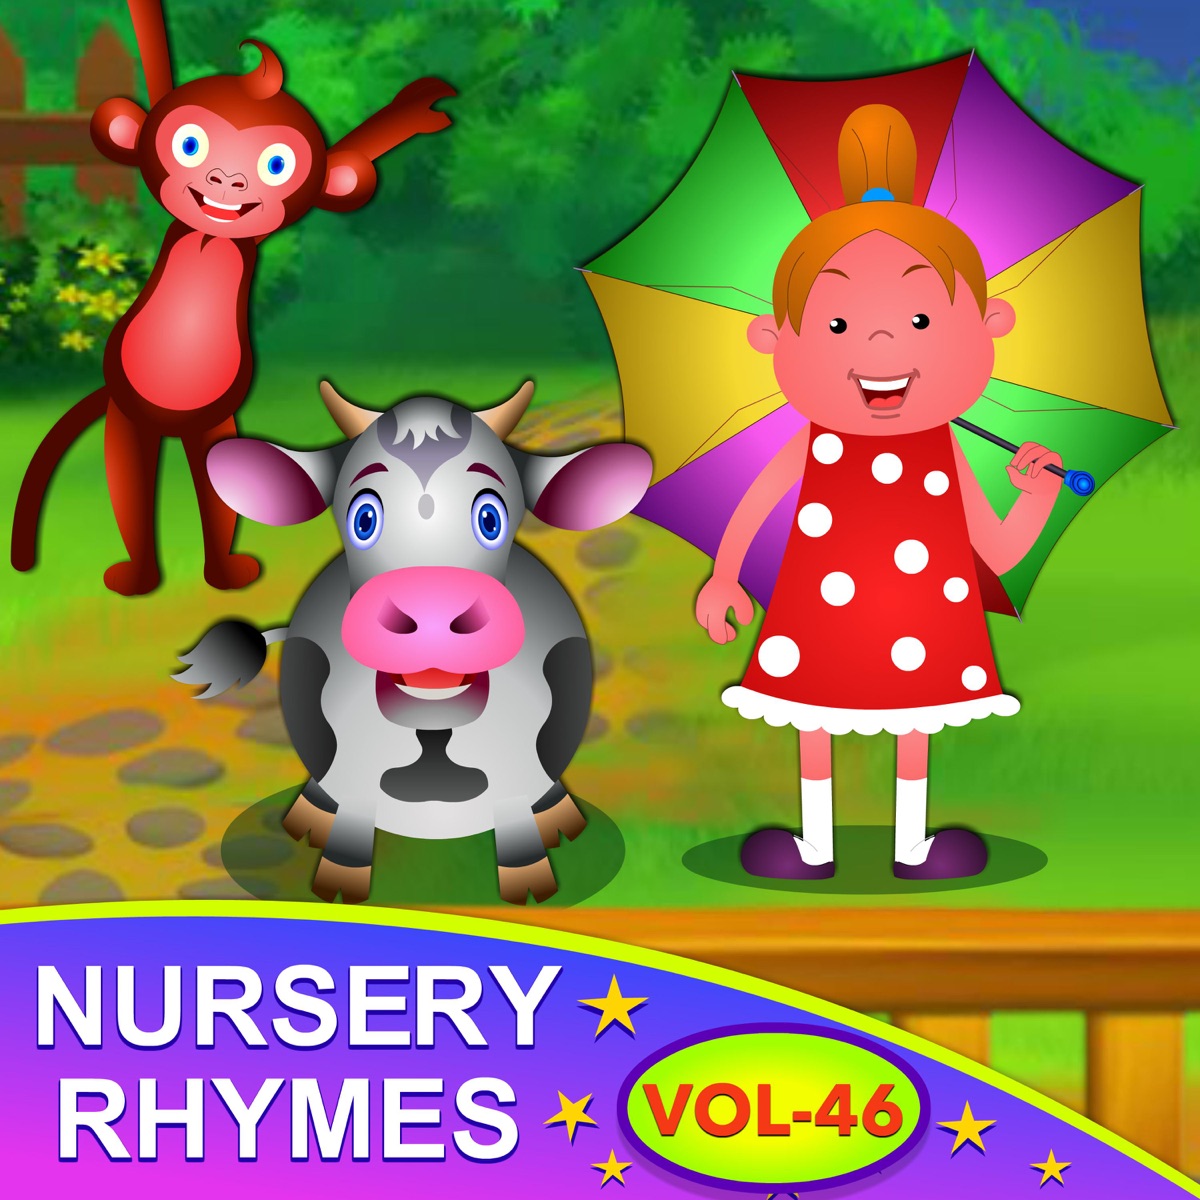 Baby Ronnie Nursery Rhymes for Kids, Vol. 16 by Videogyan Nursery Rhymes on  Apple Music